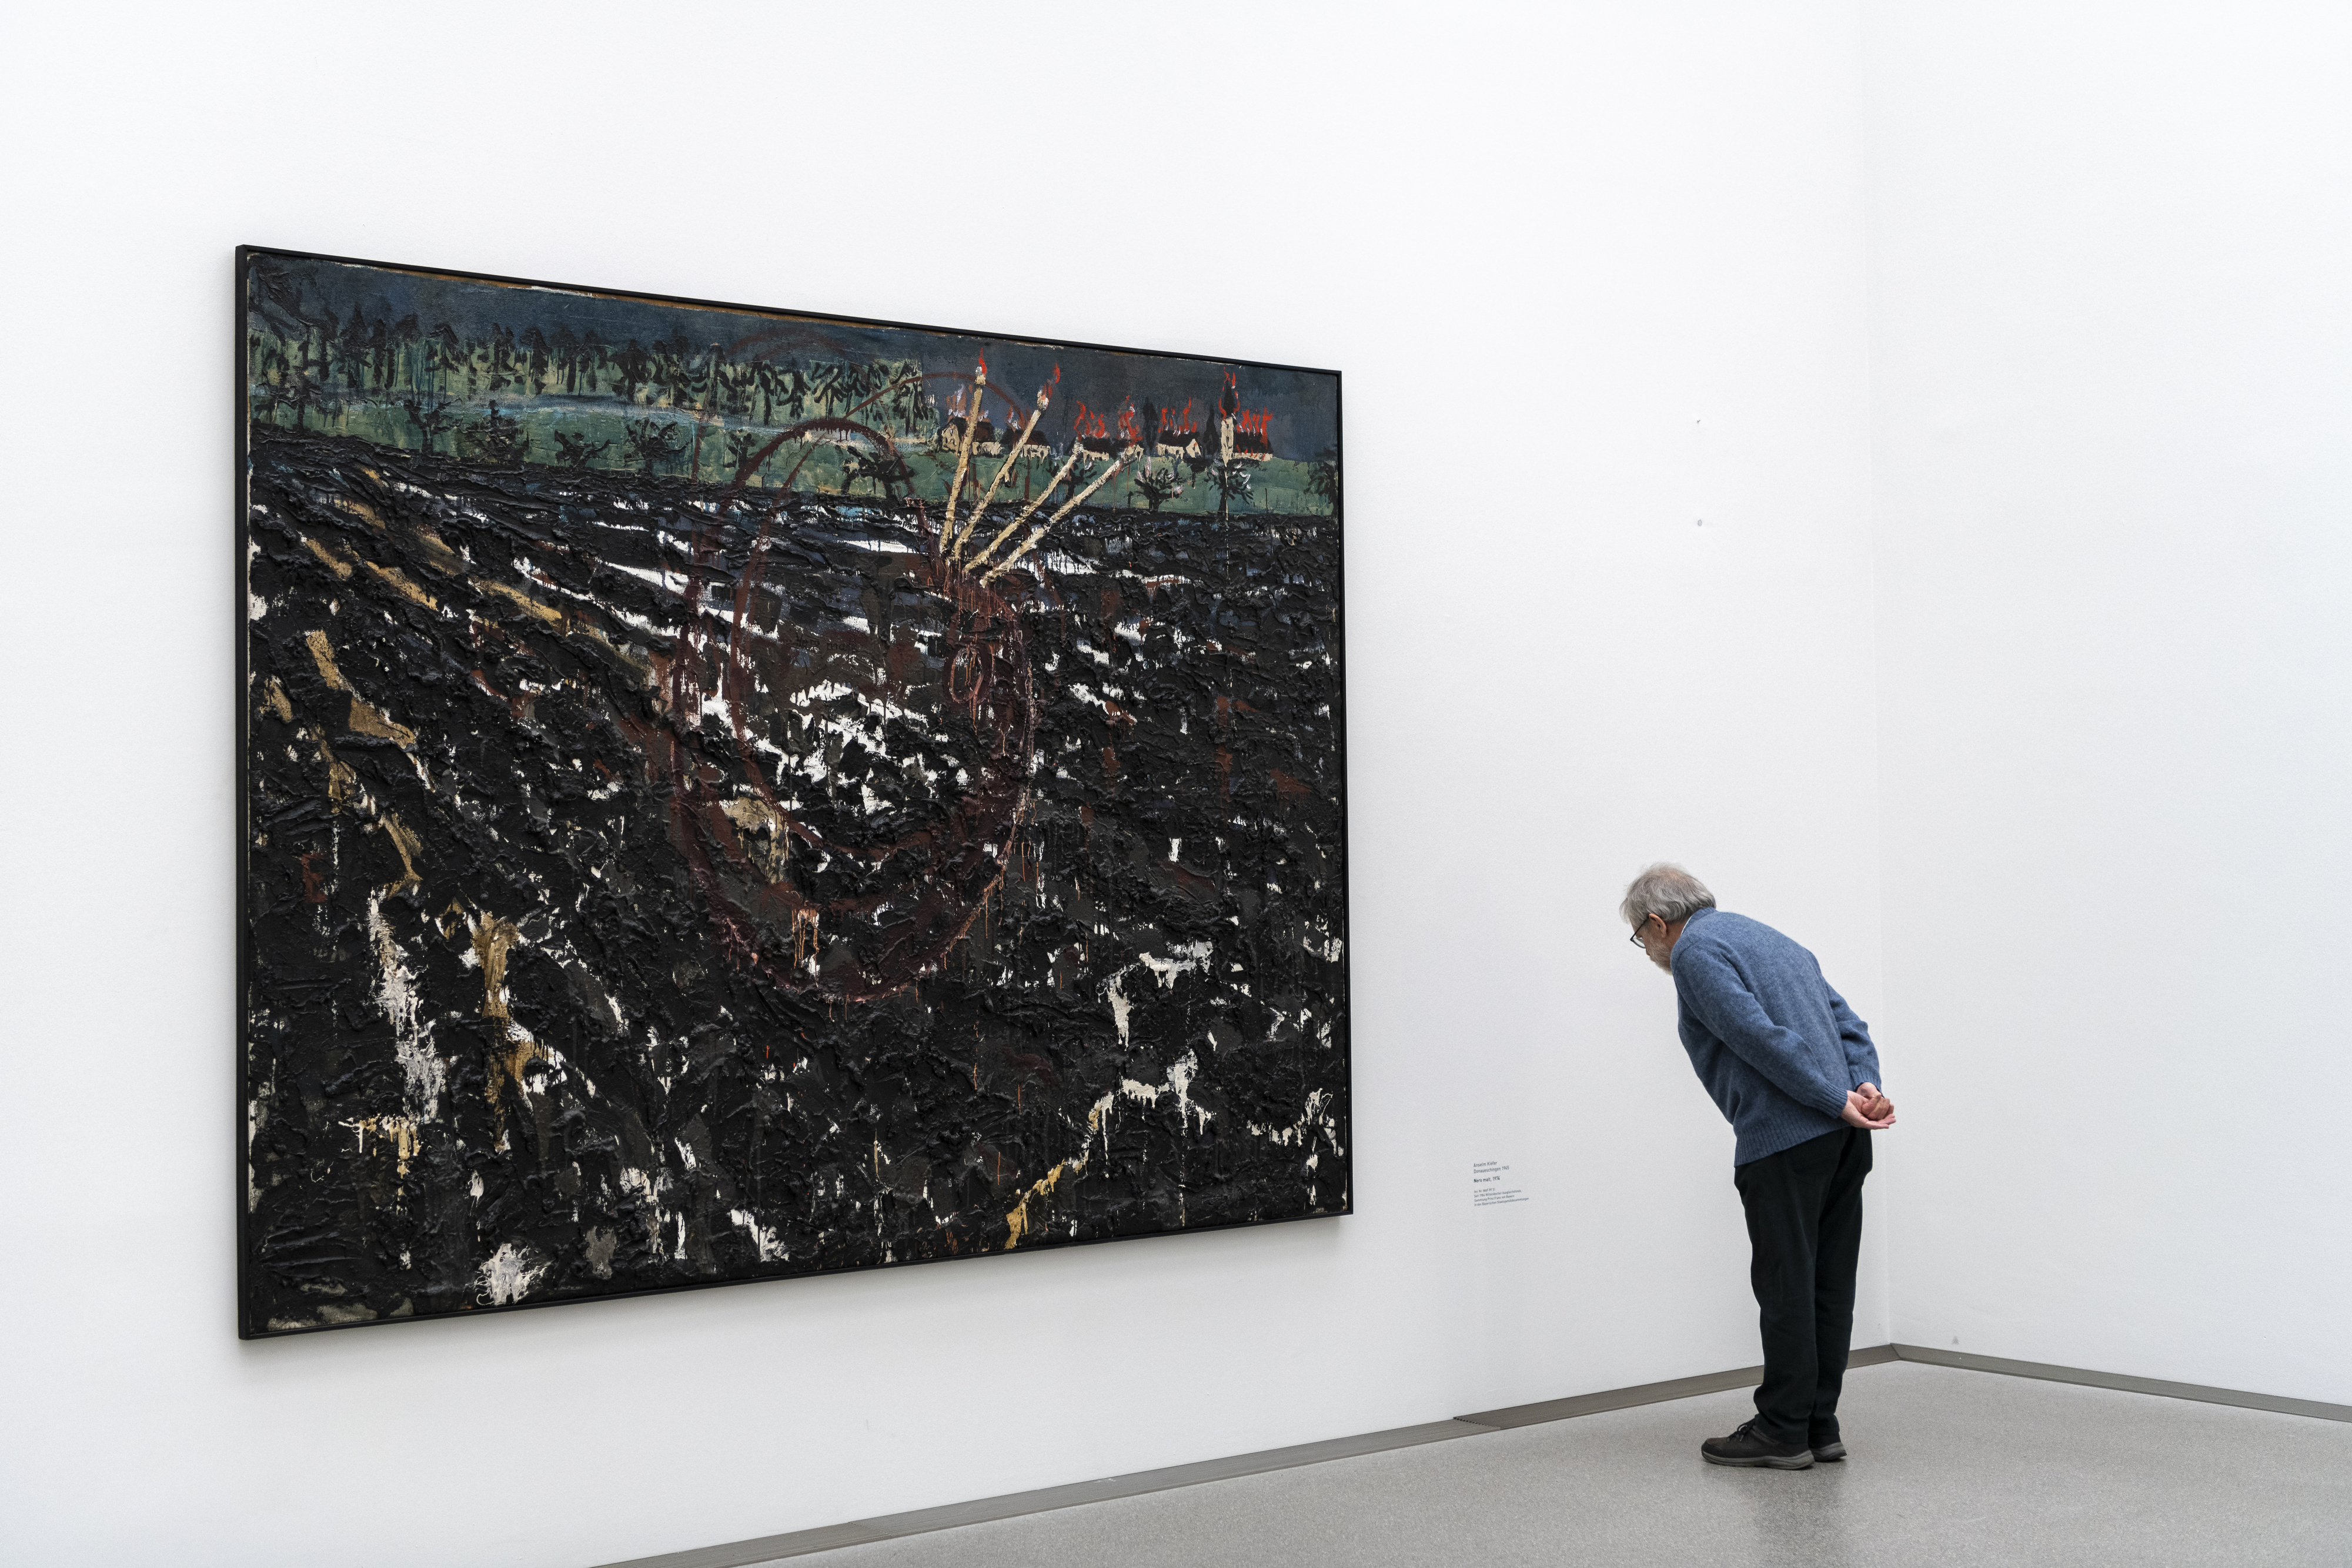 독일 뮌헨에 있는 박물관 지구에서는 인류의 예술사를 산책할 수 있다. 현대미술의 걸작을 모아 놓은 모데르네 피나코테크에서 한 관람객이 안젤름 키퍼의 작품을 감상하고 있다. 이승원 작가 제공